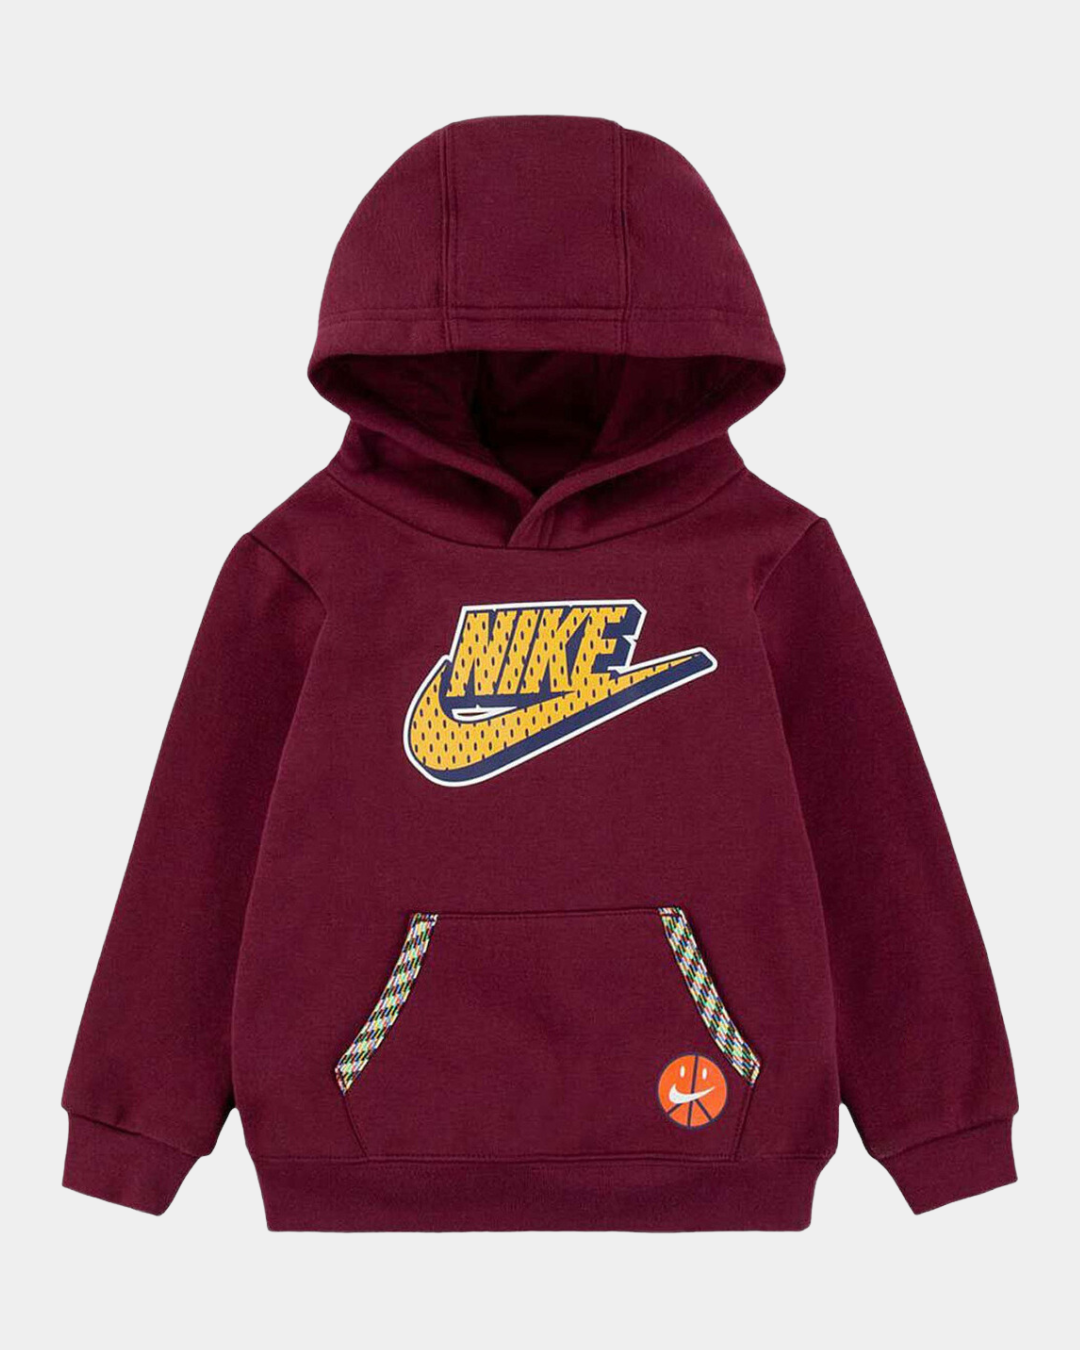 Nike Sportswear Kids' Hoodie - Burgundy